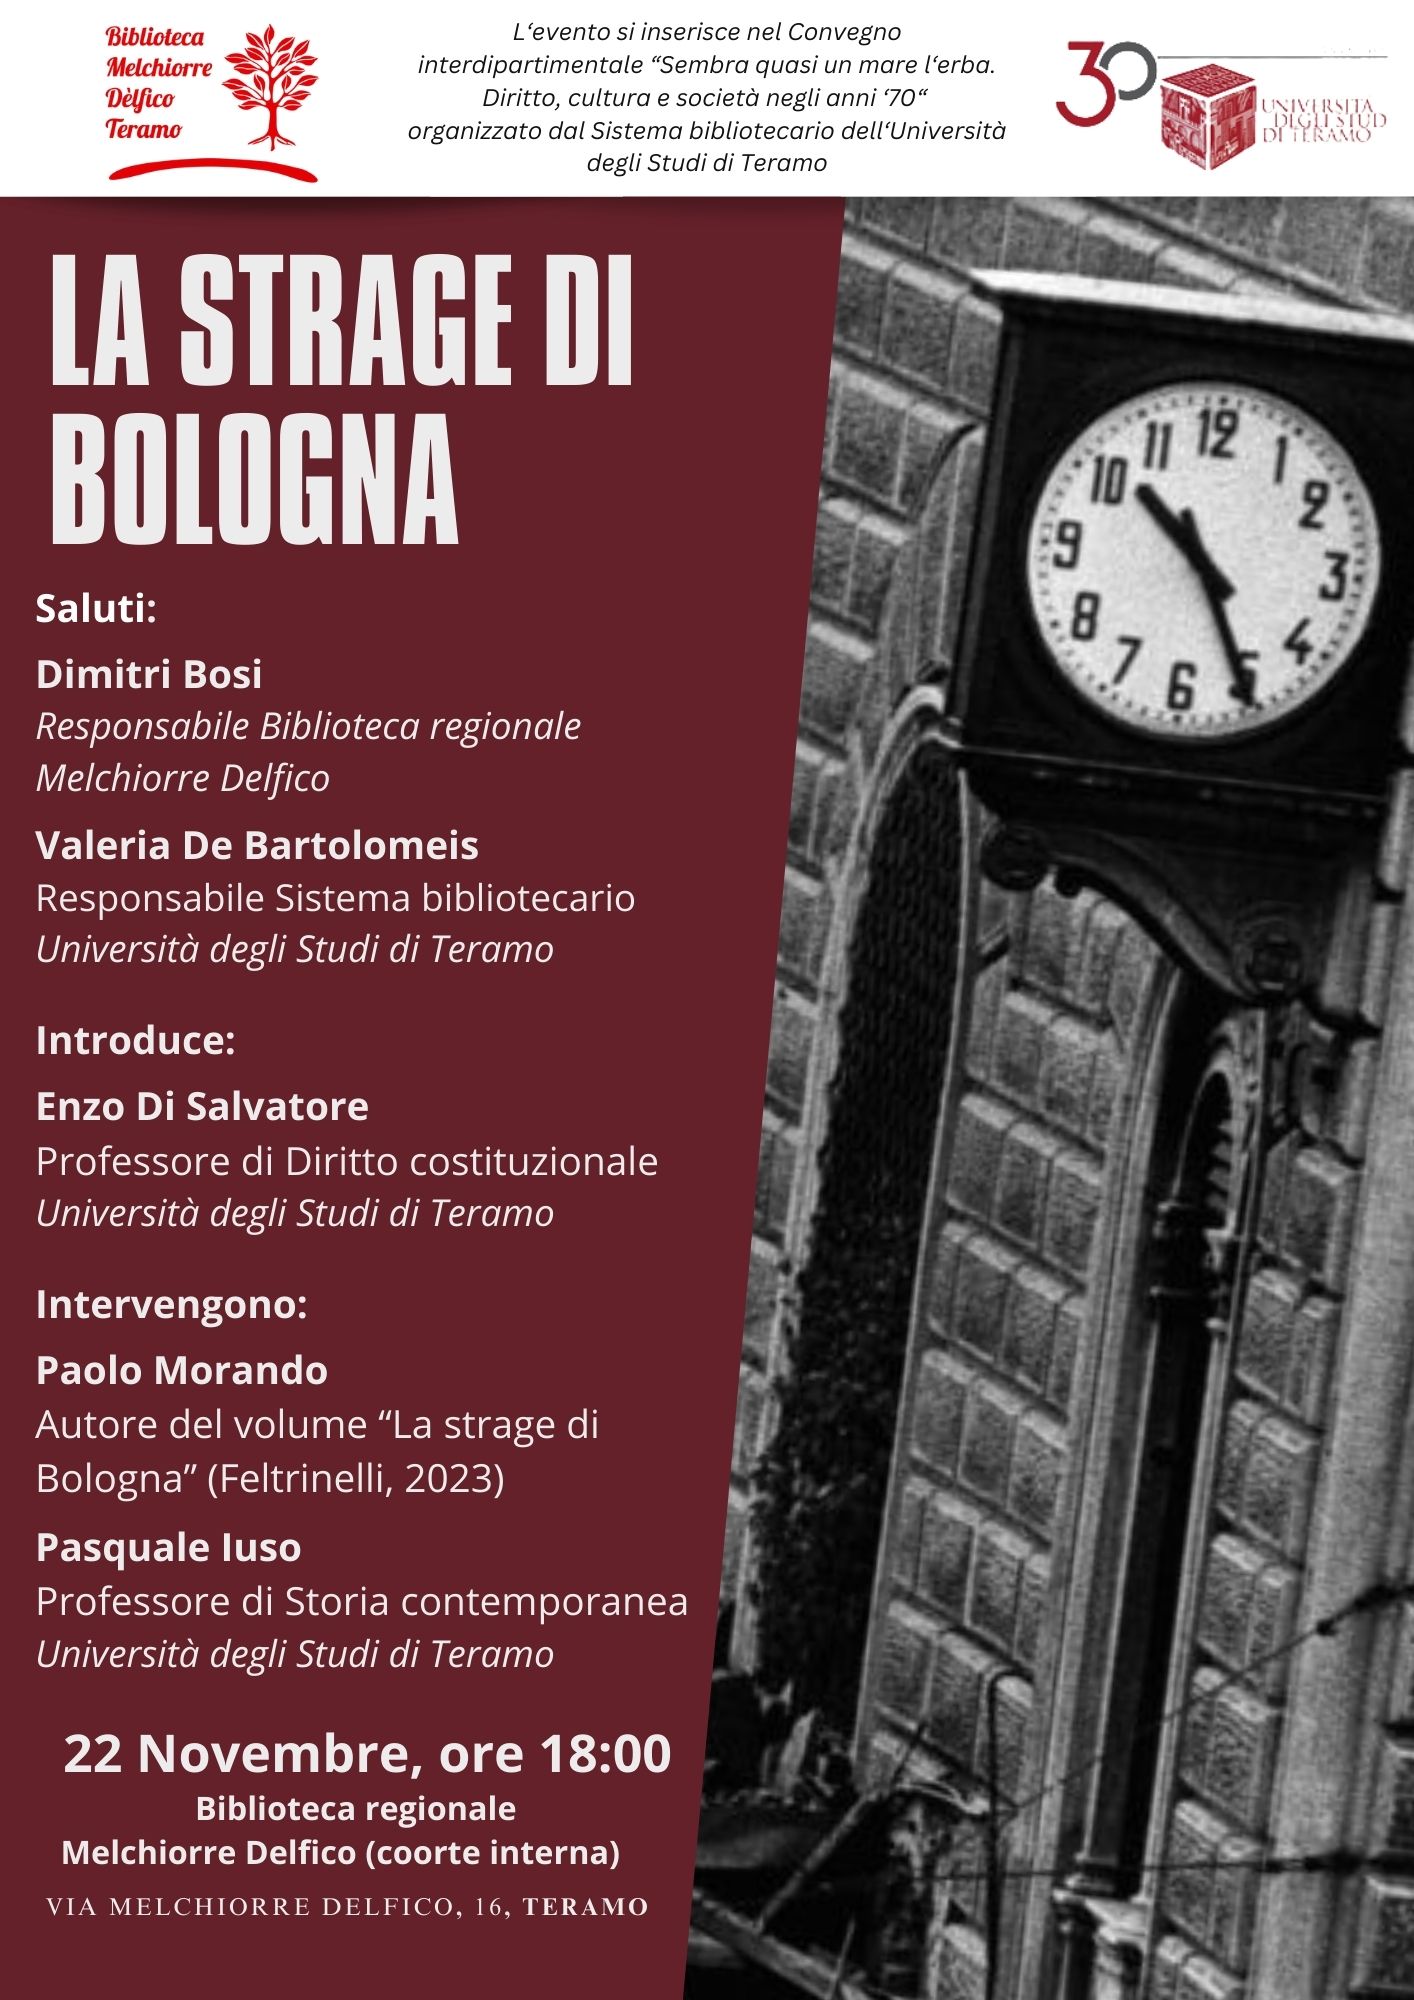 Presentanzione del libro di Paolo Morando "La strage di Bologna"